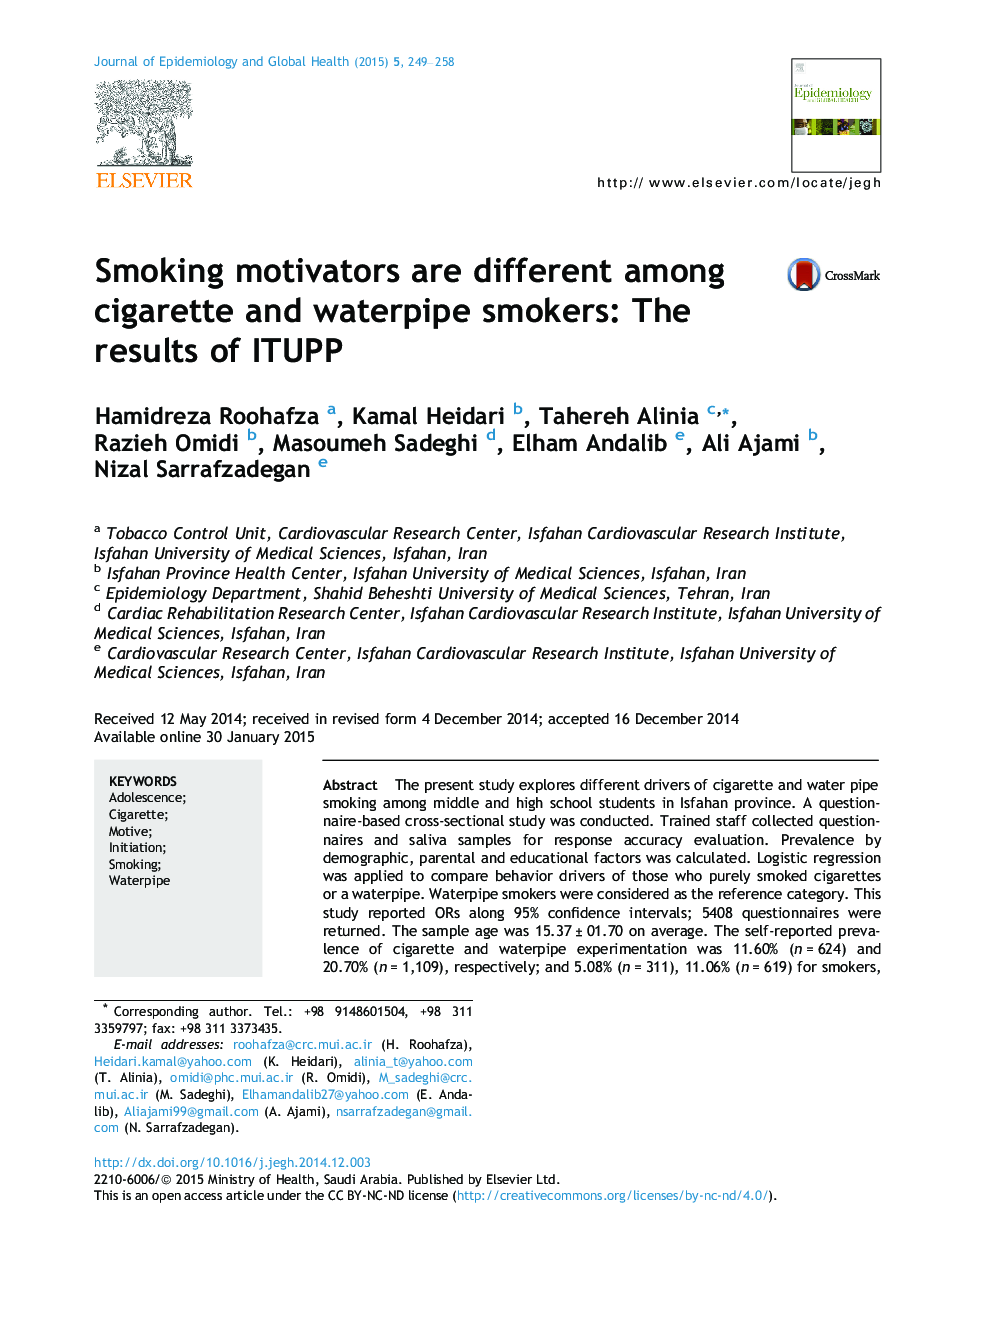 محرک های مصرف سیگار در میان افراد سیگاری و قلیانی متفاوت هستند: نتایج ITUPP